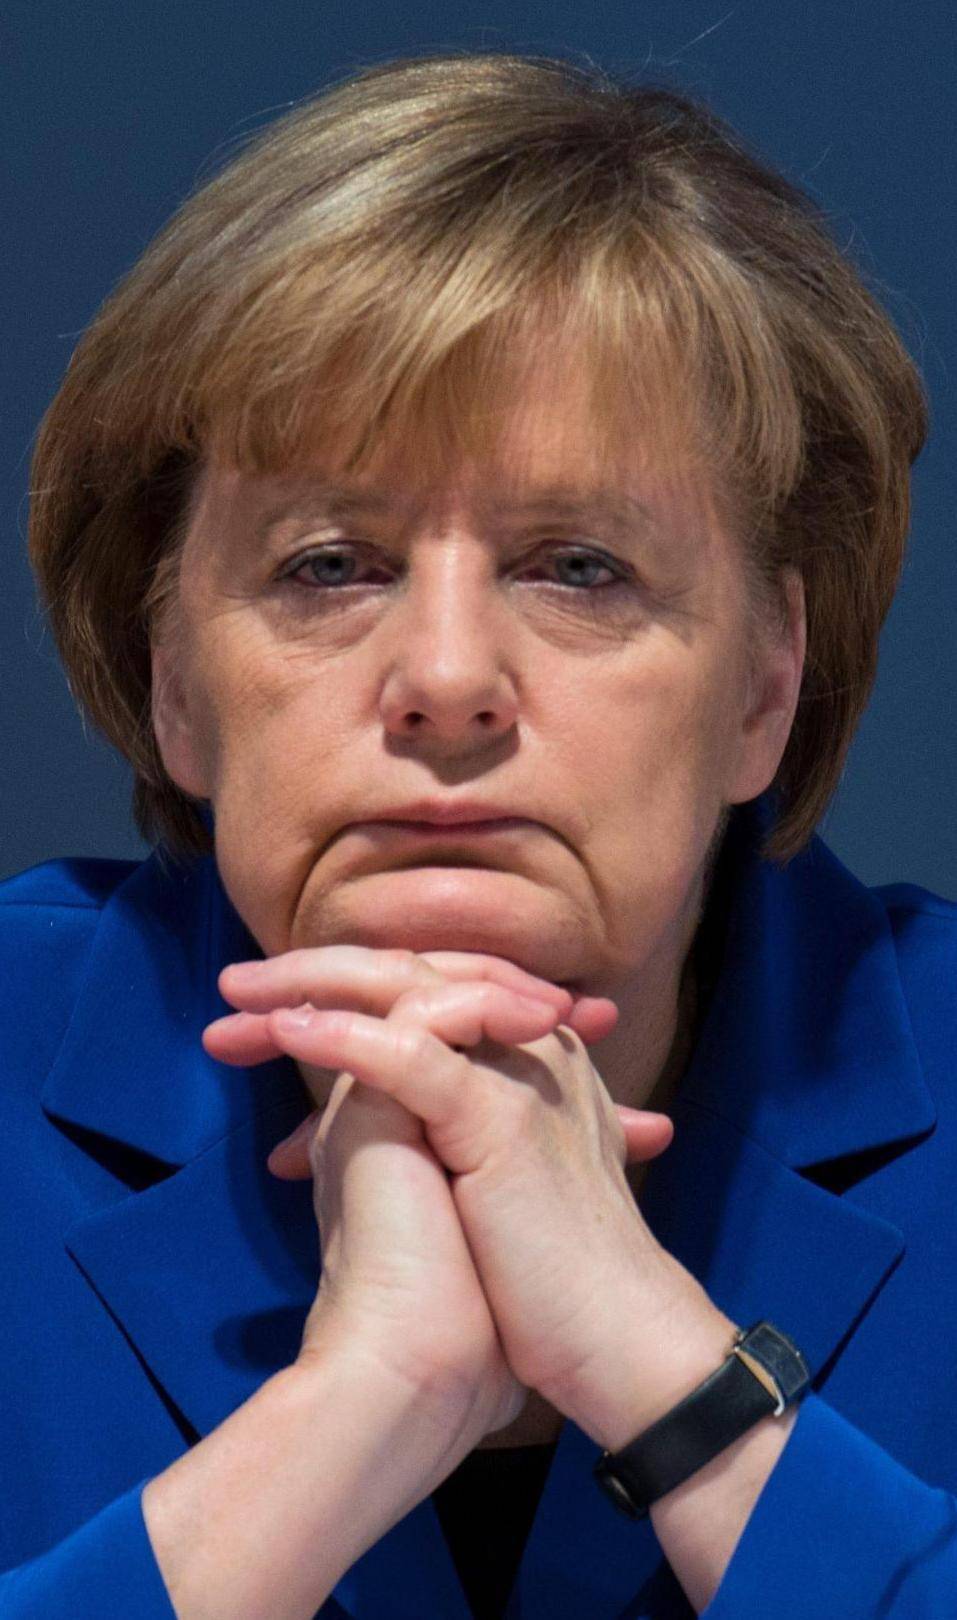 Merkel sotto scacco. I socialisti impongono una virata a sinistra